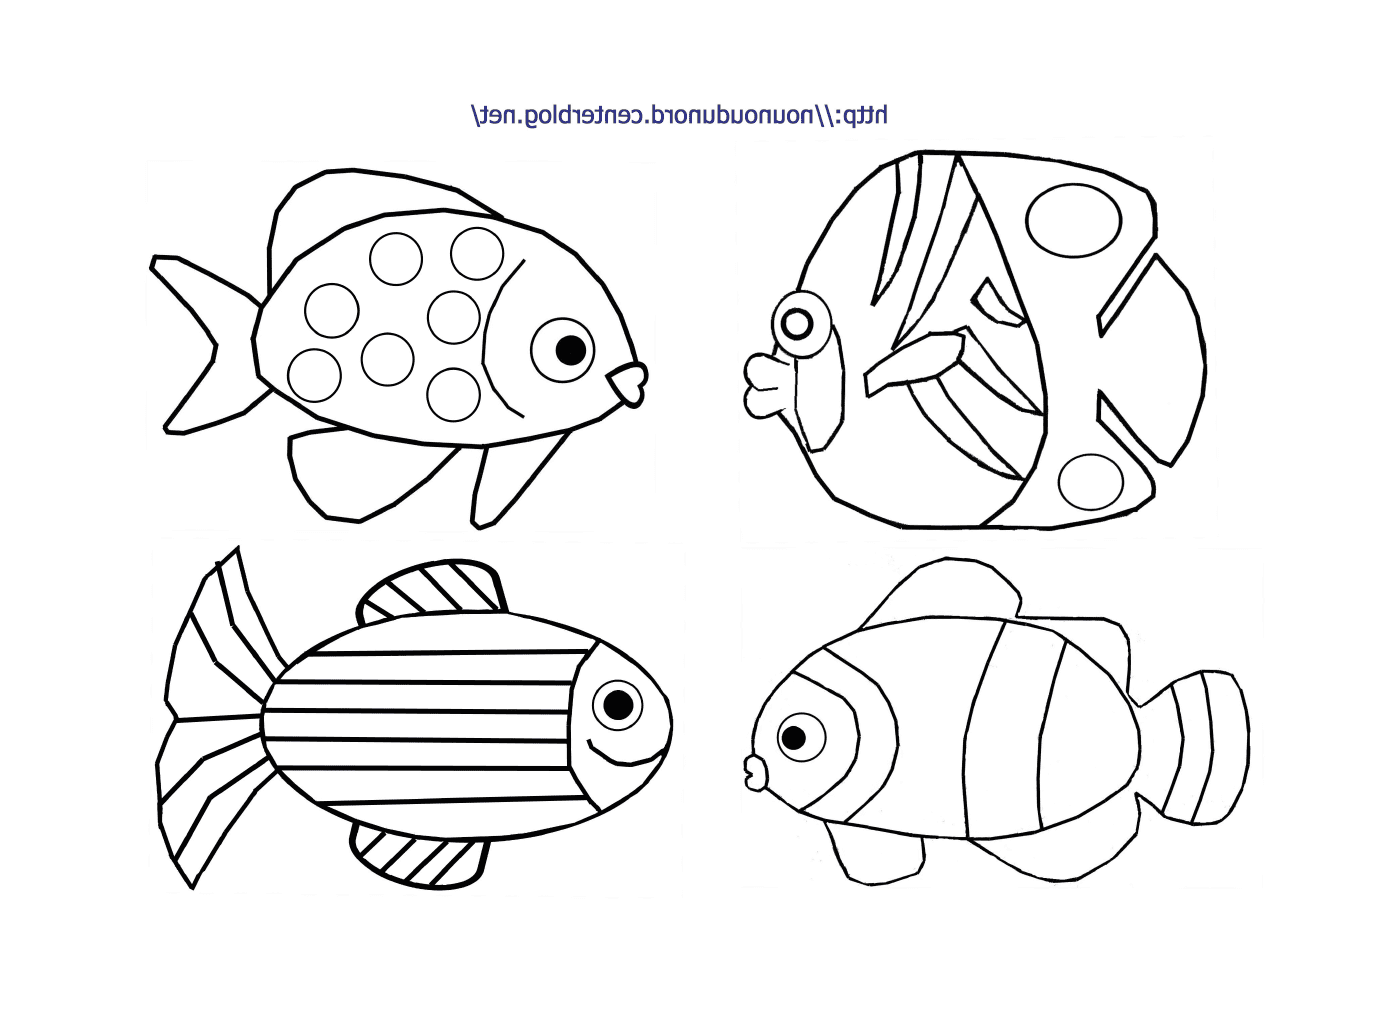  Gruppo di quattro pesci diversi 